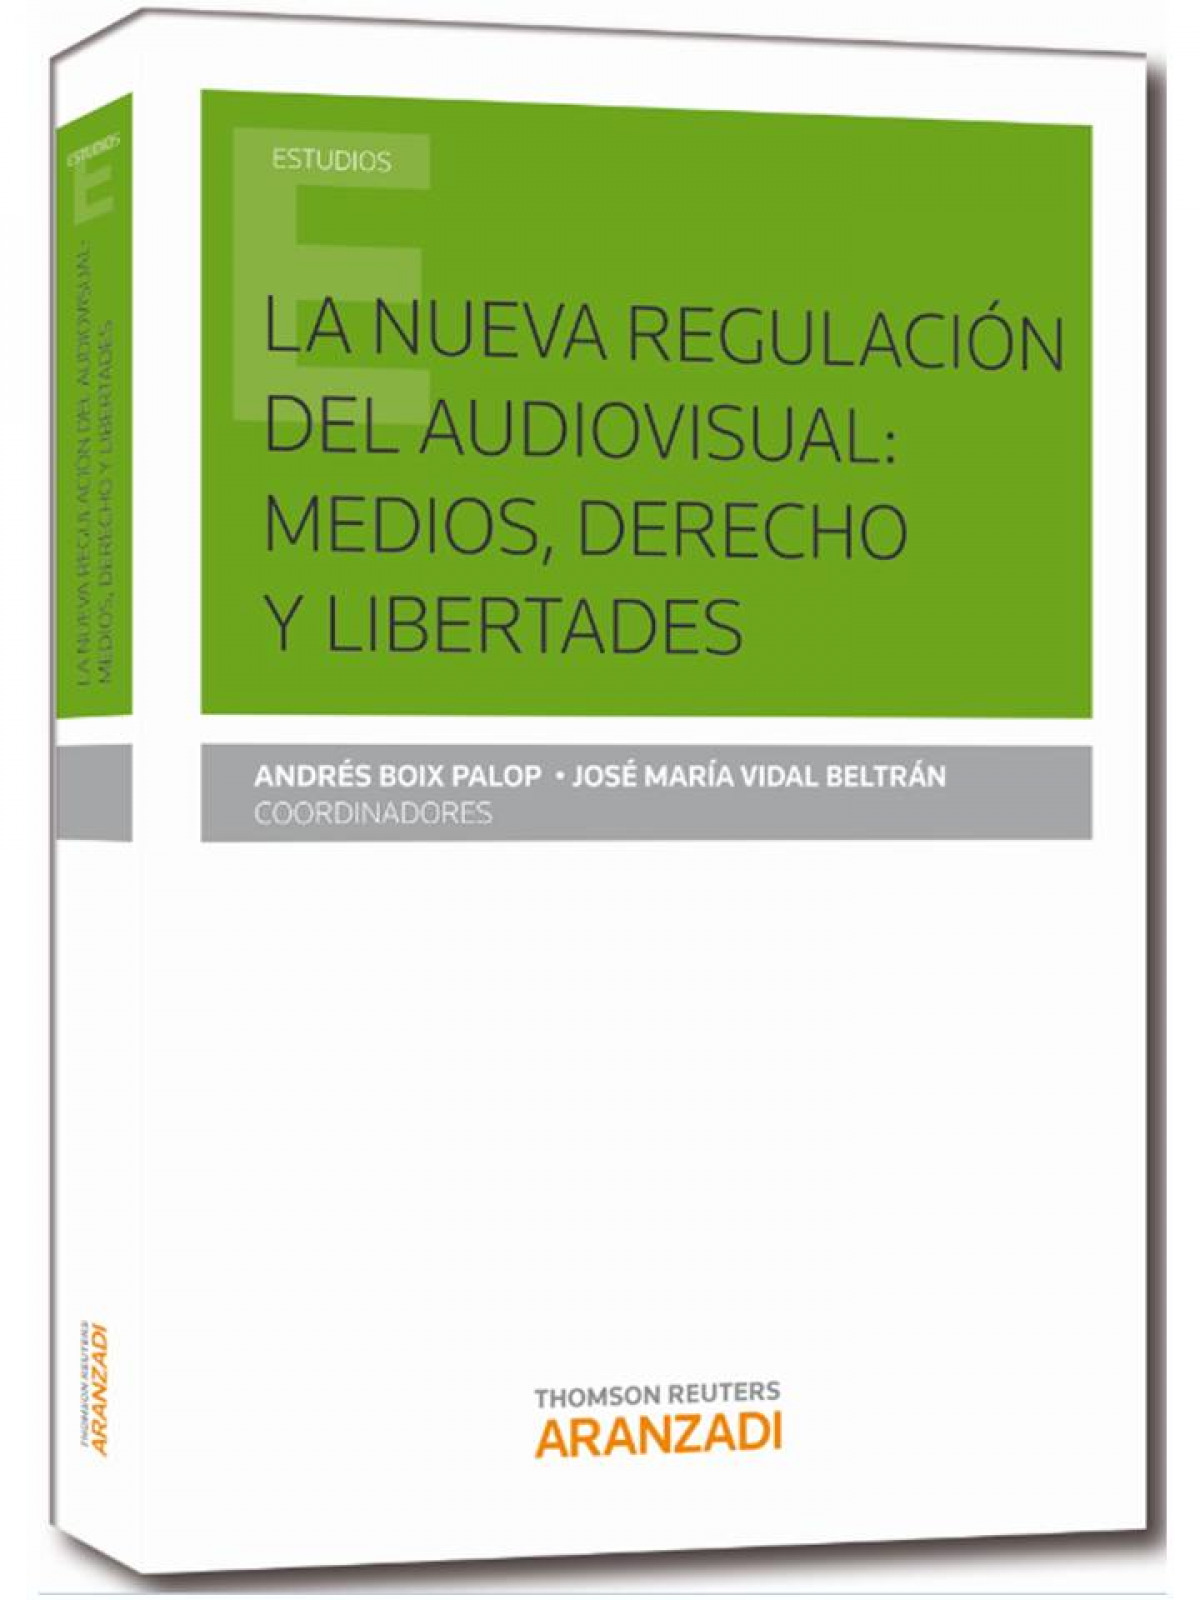 La nueva regulación del audiovisual: medios, derechos y libertades - Boix Palop, Andrés